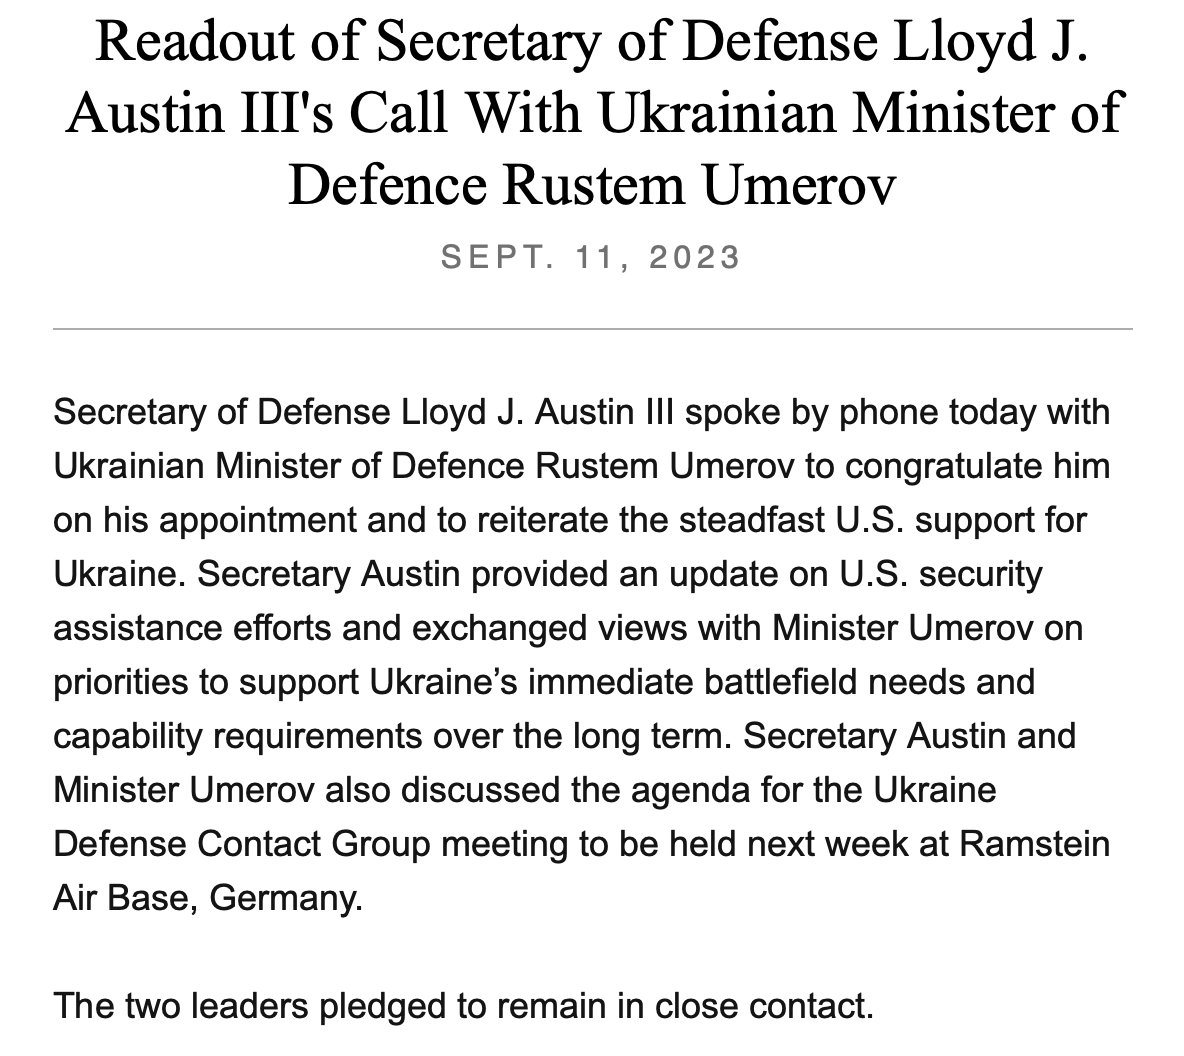 US @SecDef Lloyd Austin v pondelok hovoril s novým ukrajinským ministrom obrany Rustem Umerovom podľa @DeptofDefense. Výzva mala „zopakovať vytrvalú podporu USA Ukrajine a tiež poskytnúť Umerovovi aktuálne informácie o pomoci USA